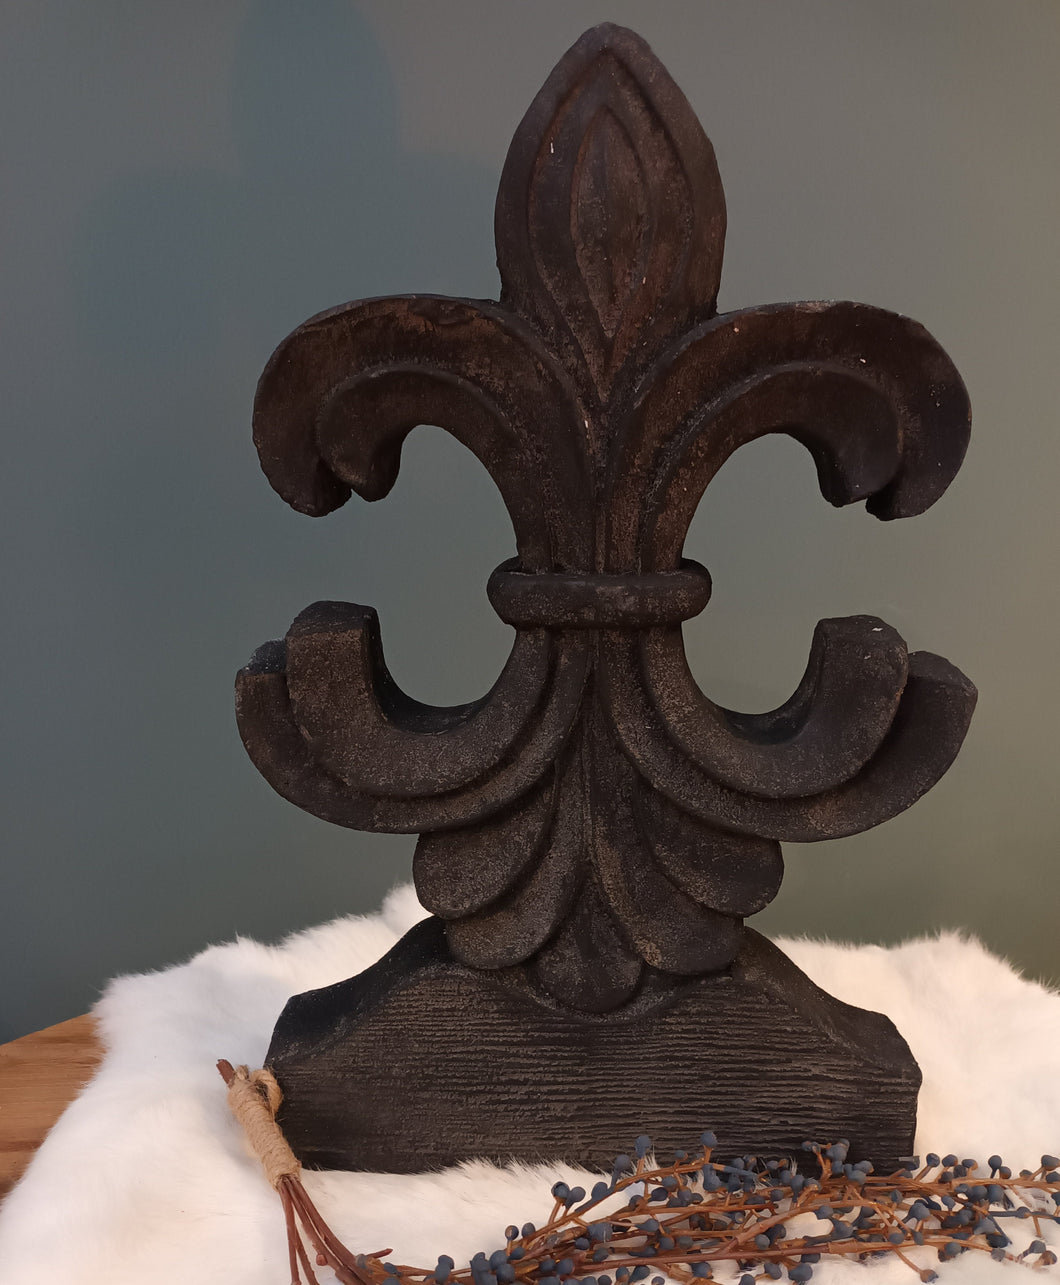 Zwarte houten ornament ca. 40 cm hoog (breekbaar! opsturen eigen risico)